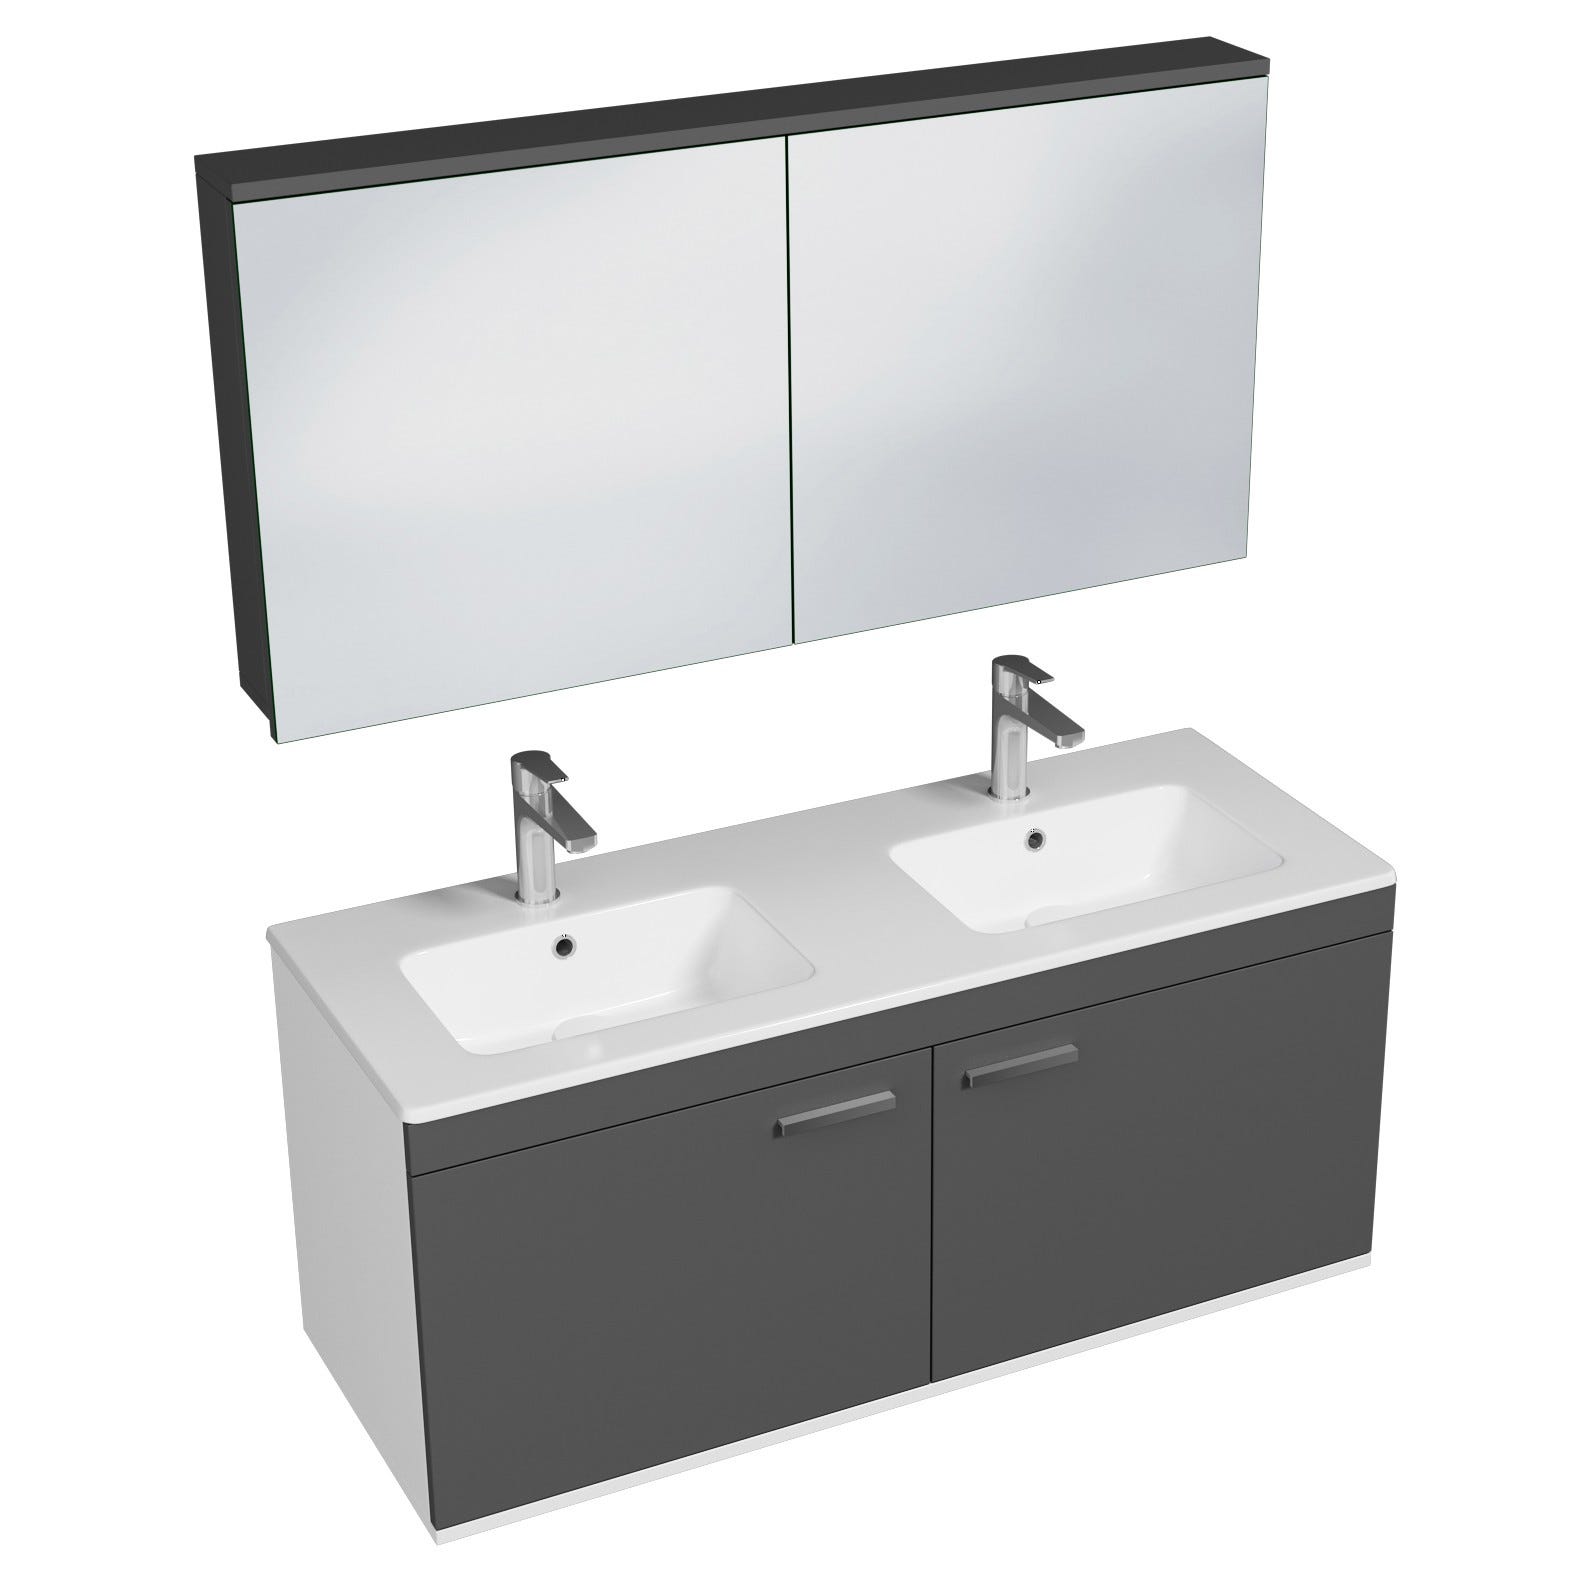 RUBITE Meuble salle de bain double vasque 2 portes gris anthracite largeur 120 cm + miroir armoire 0